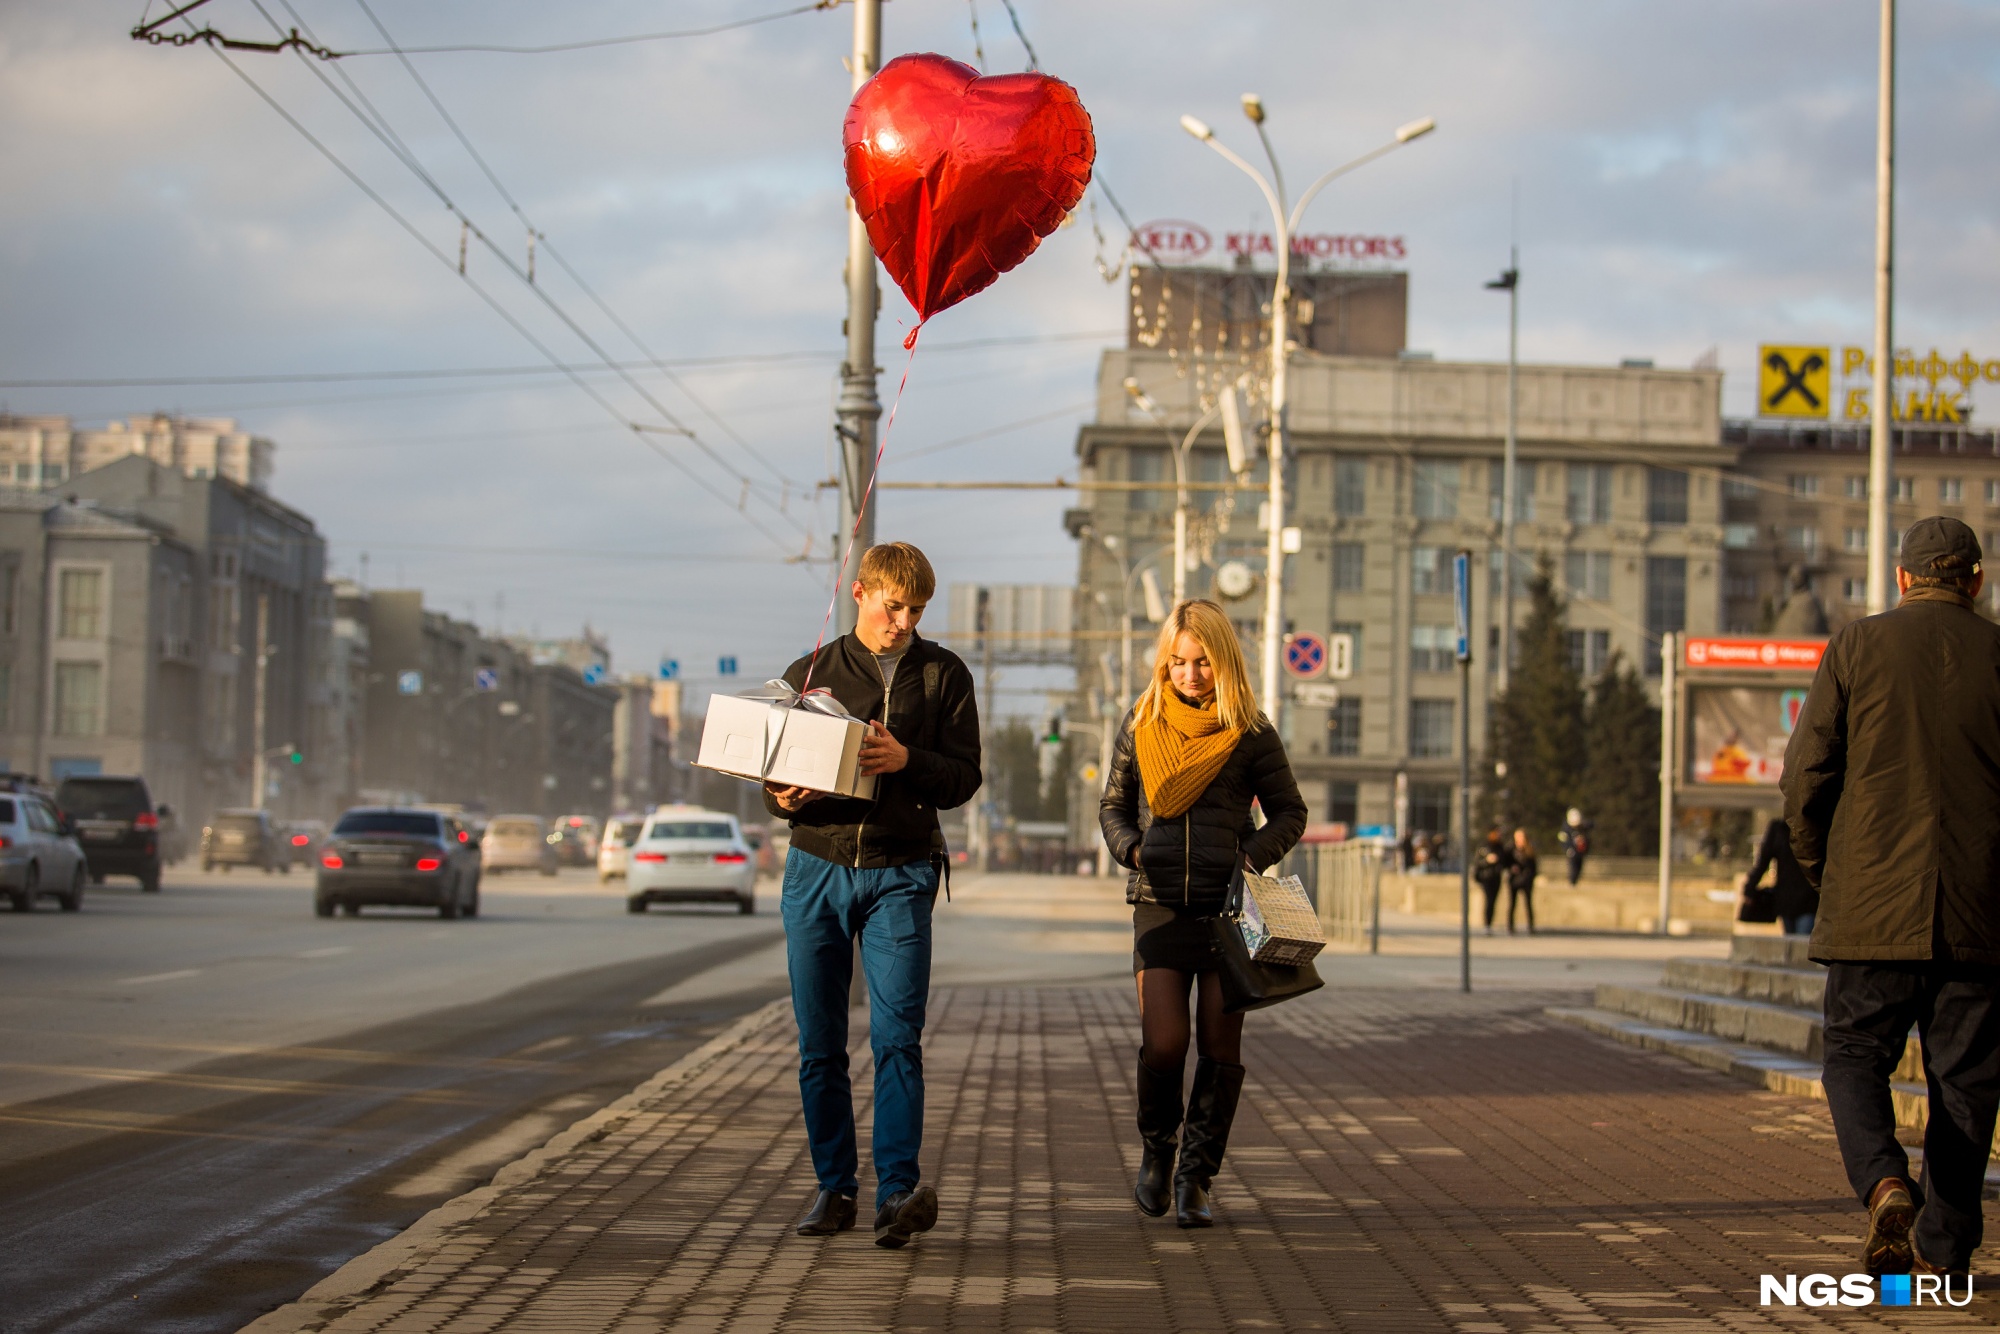 Love Ngs Ru Знакомства В Новосибирске